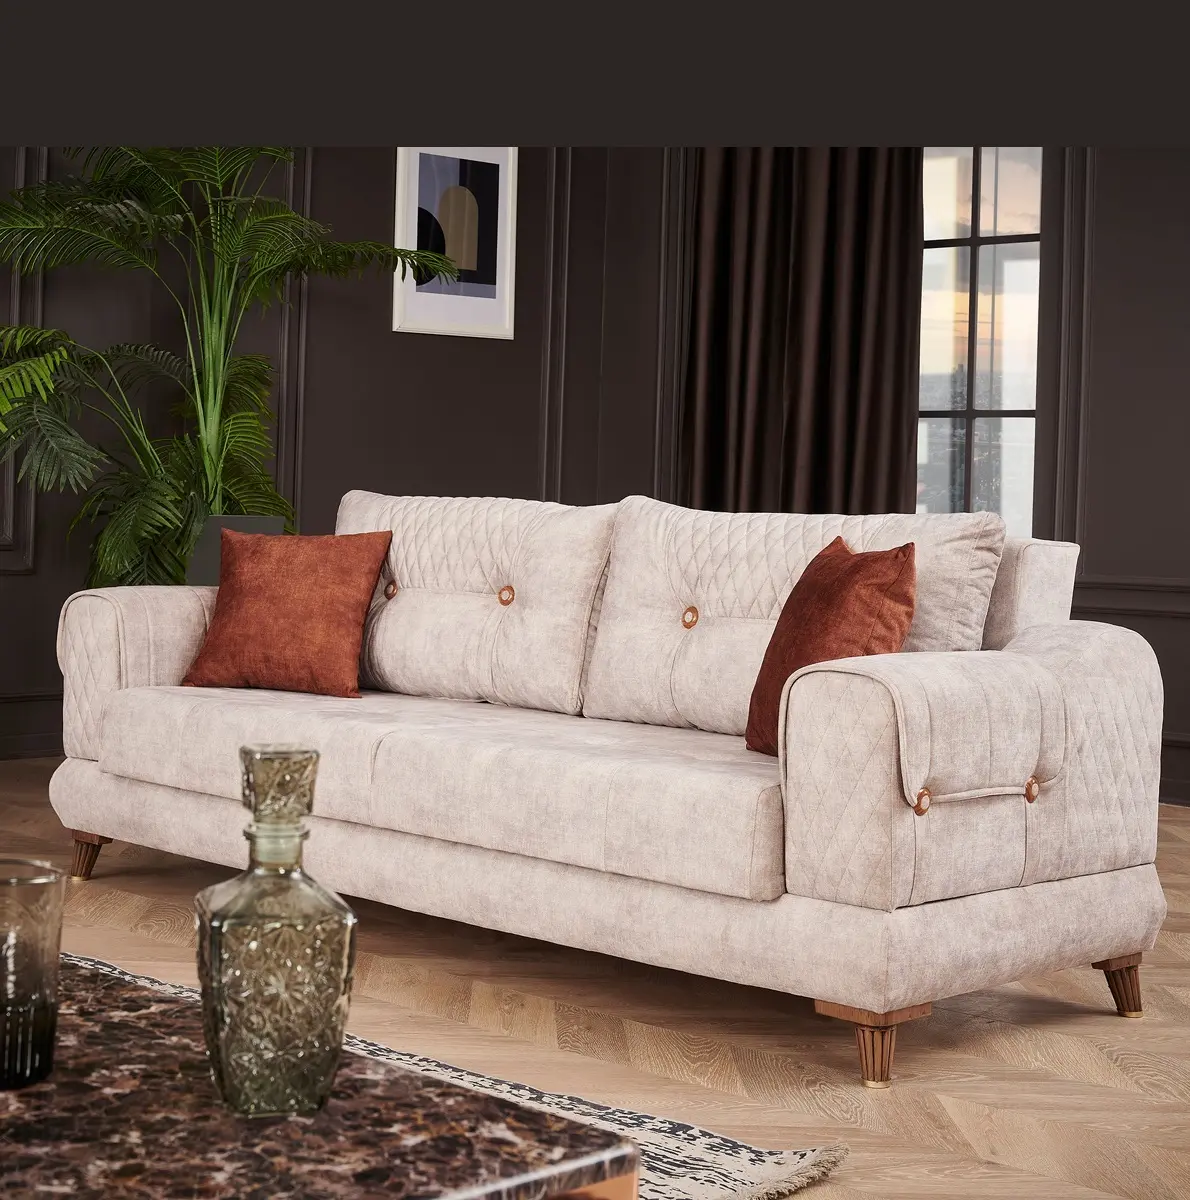 Sofás modernos y minimalistas para el hogar, muebles de lujo, cómodos, duraderos, duraderos y contemporáneos, oferta